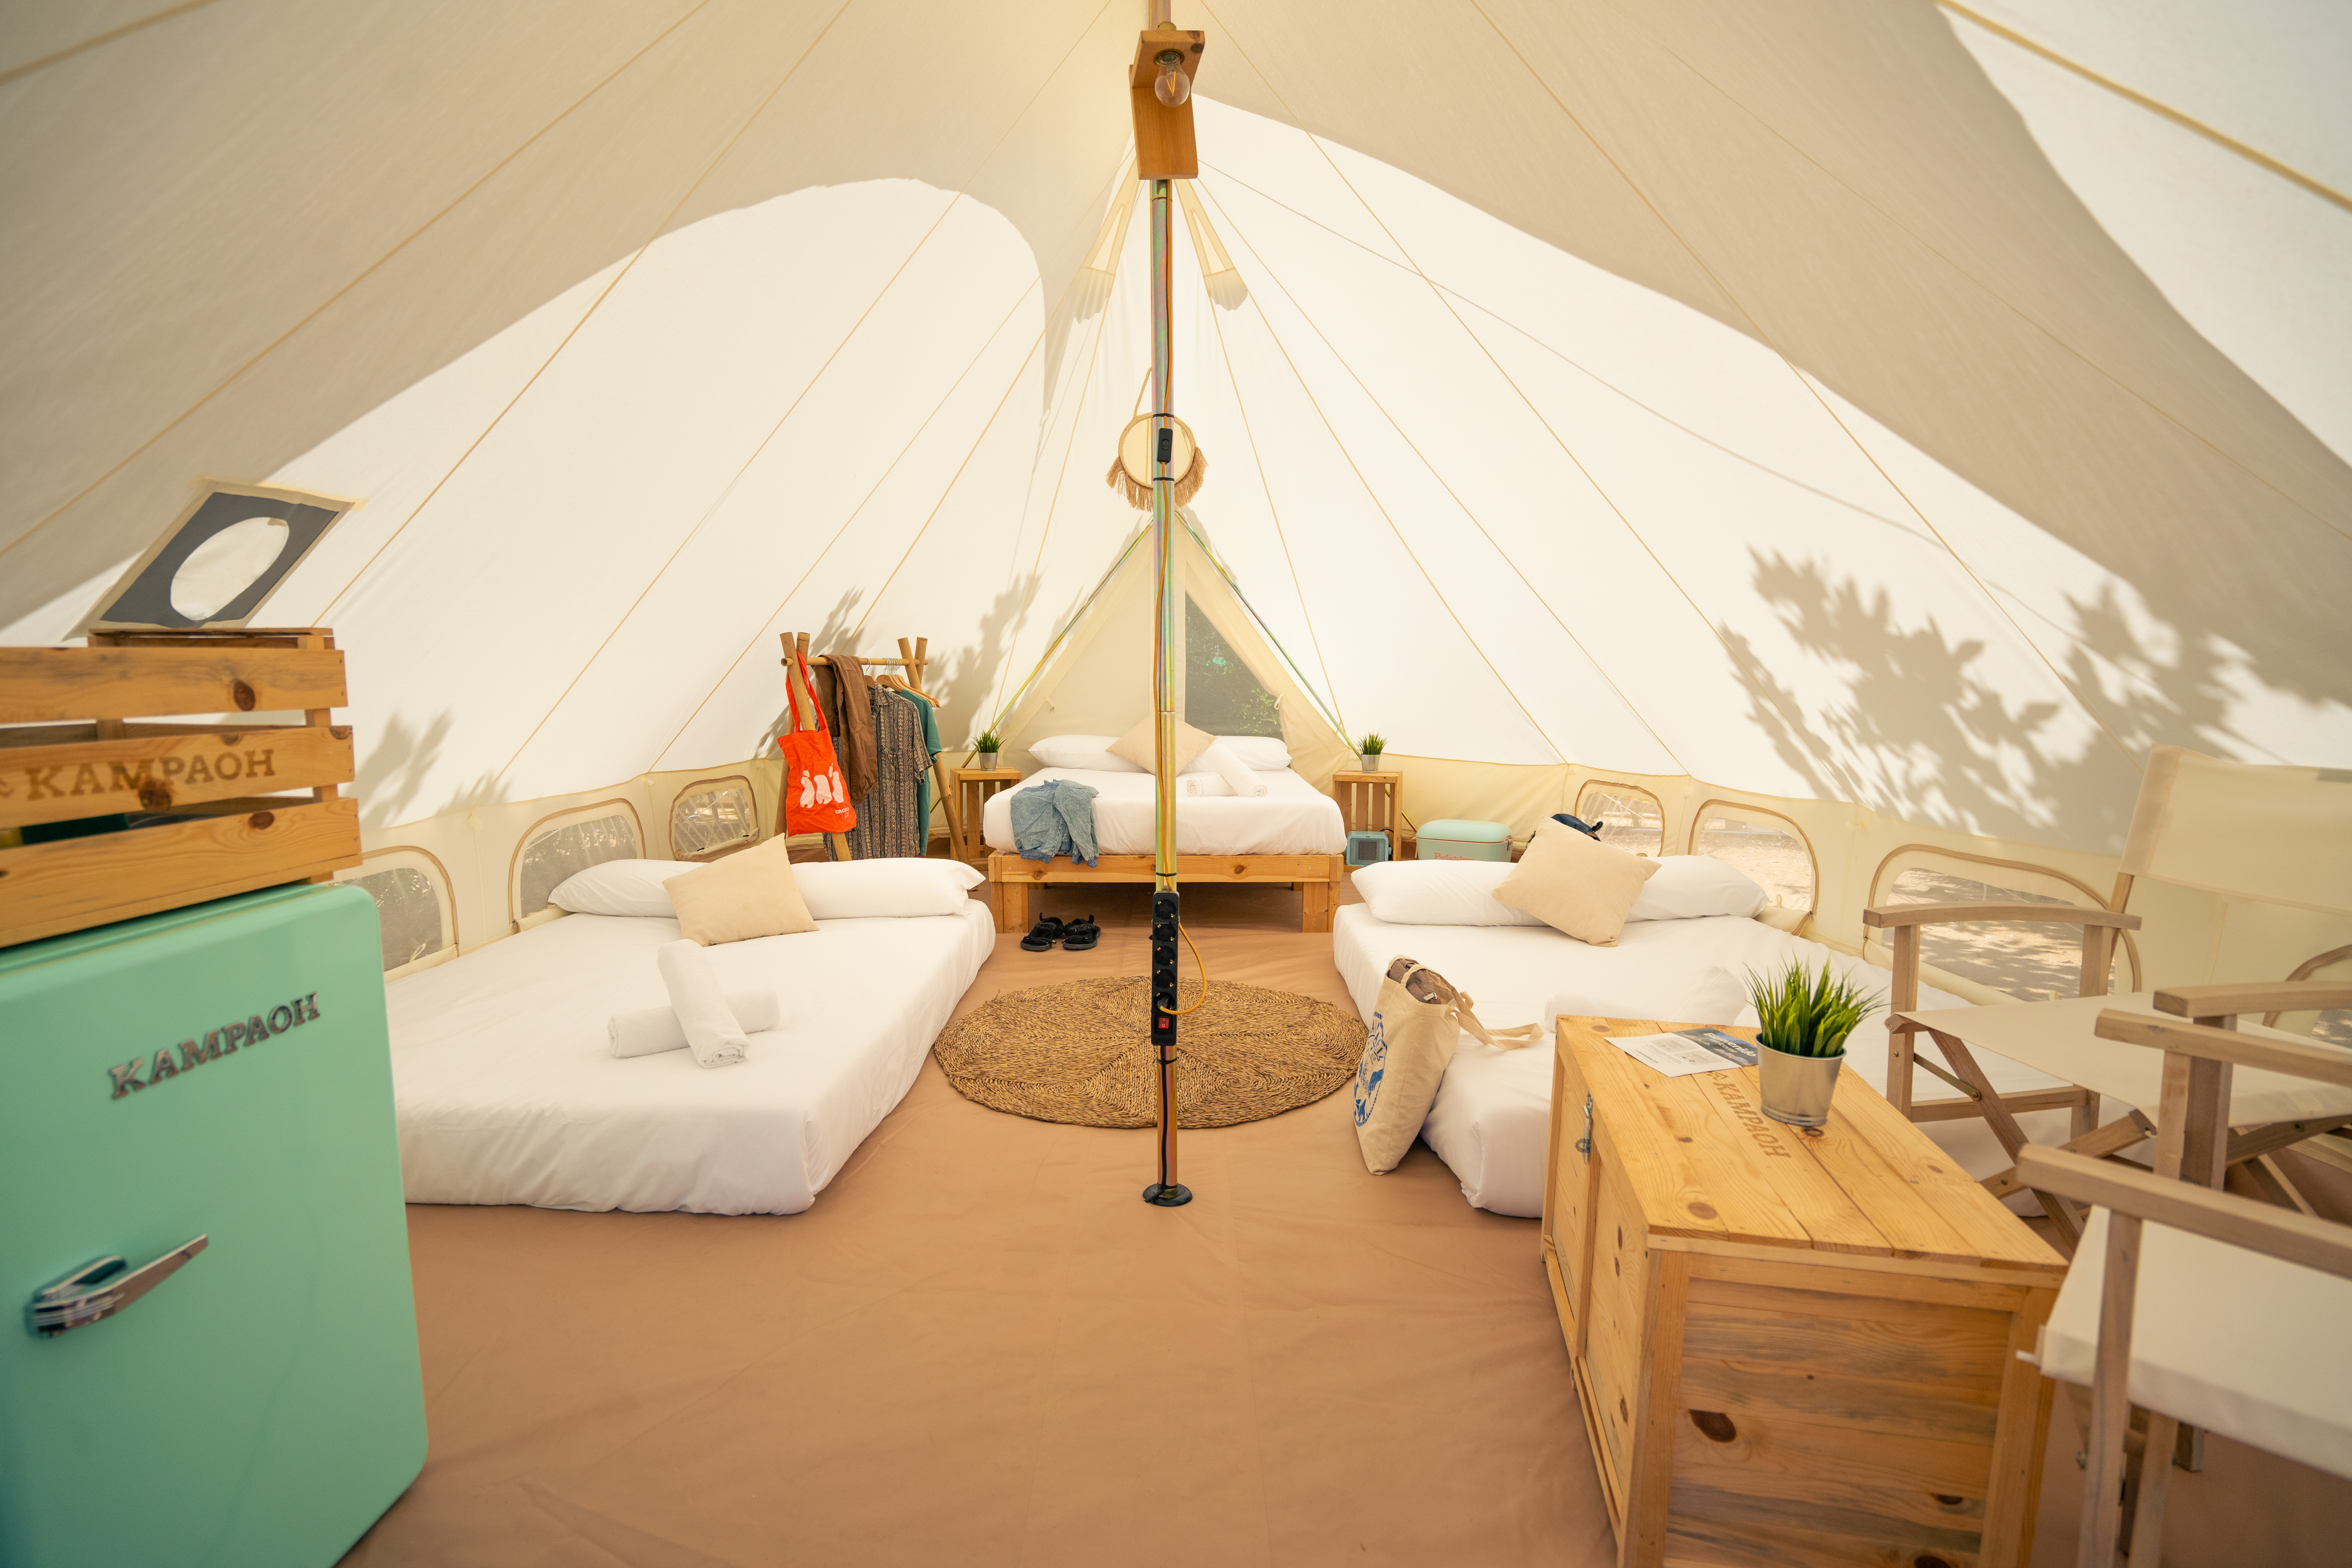 Vivez une expérience de luxe en camping Dès 99€ la semaine, Tente luxe toute équipée | 5600